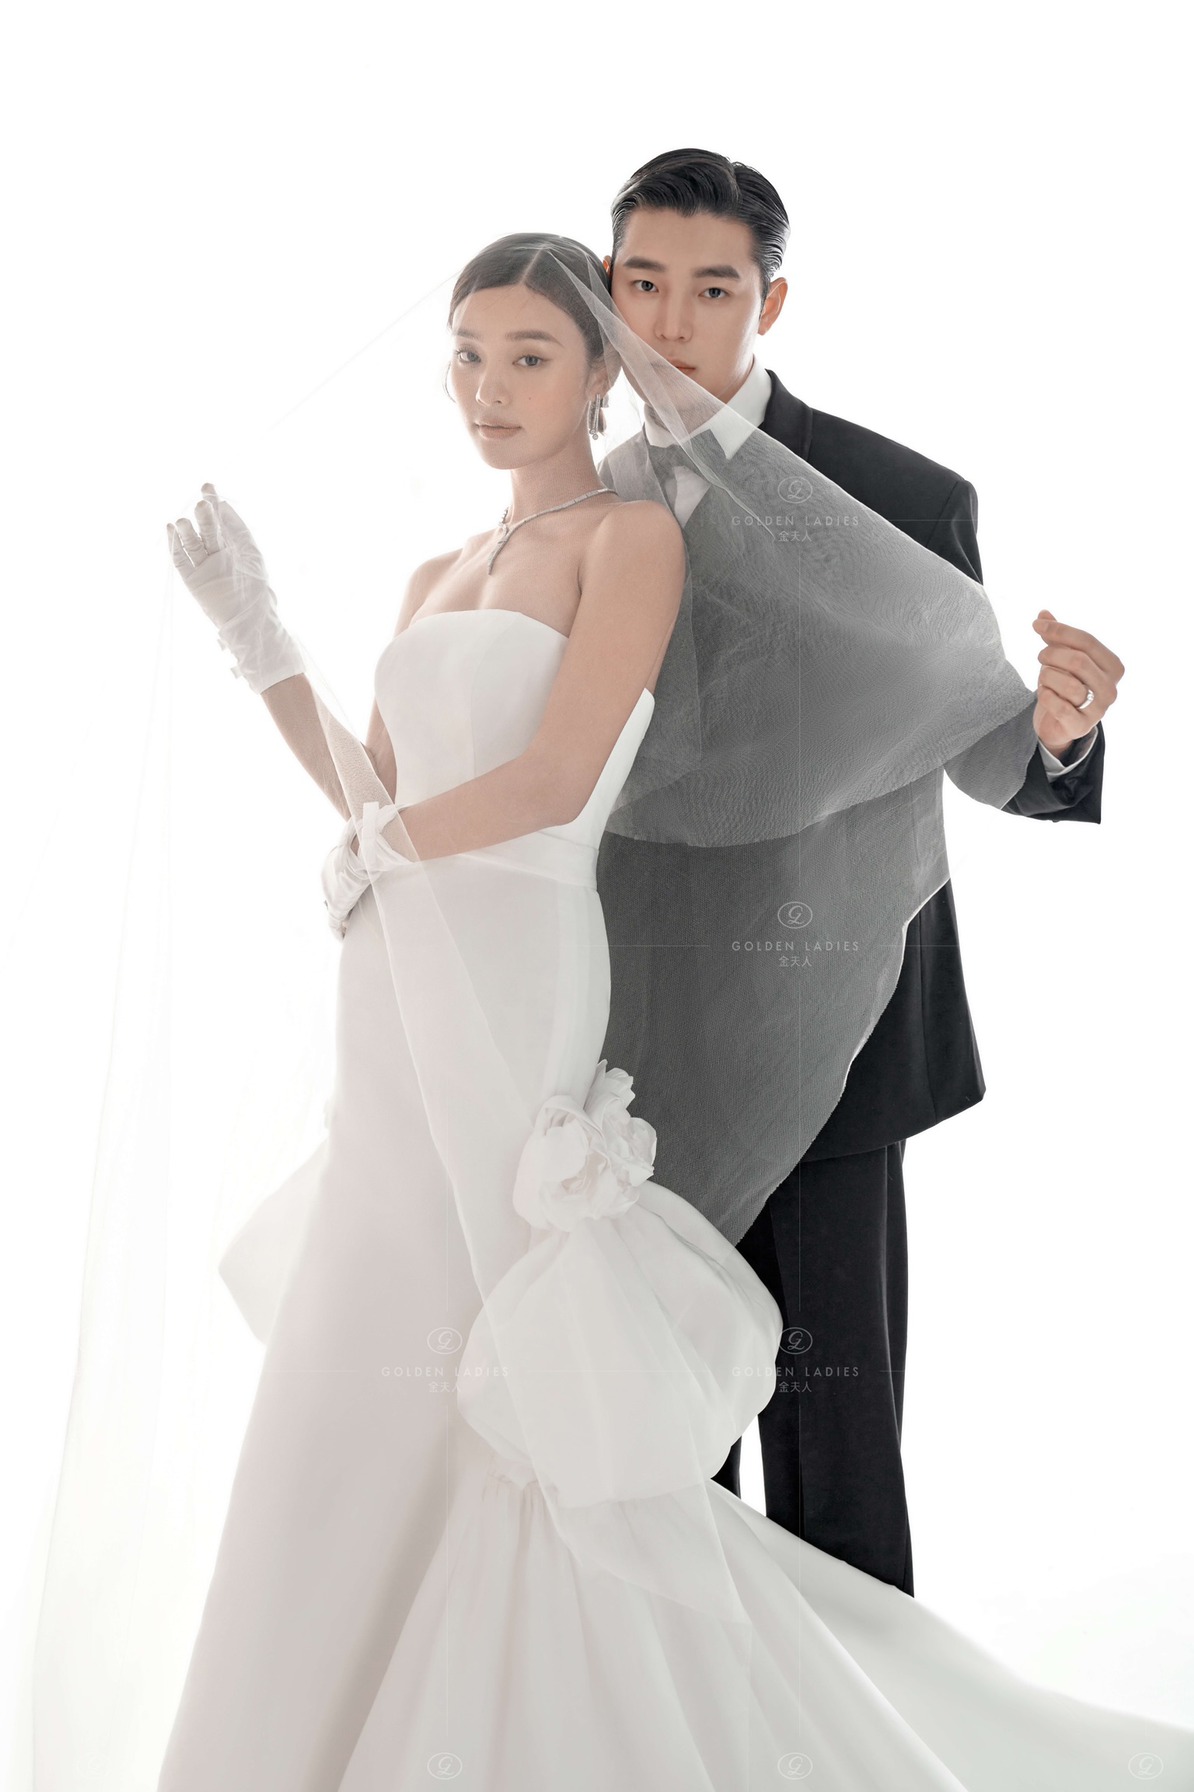 【婚礼仪式系列】极简婚纱照 | 轻婚纱照